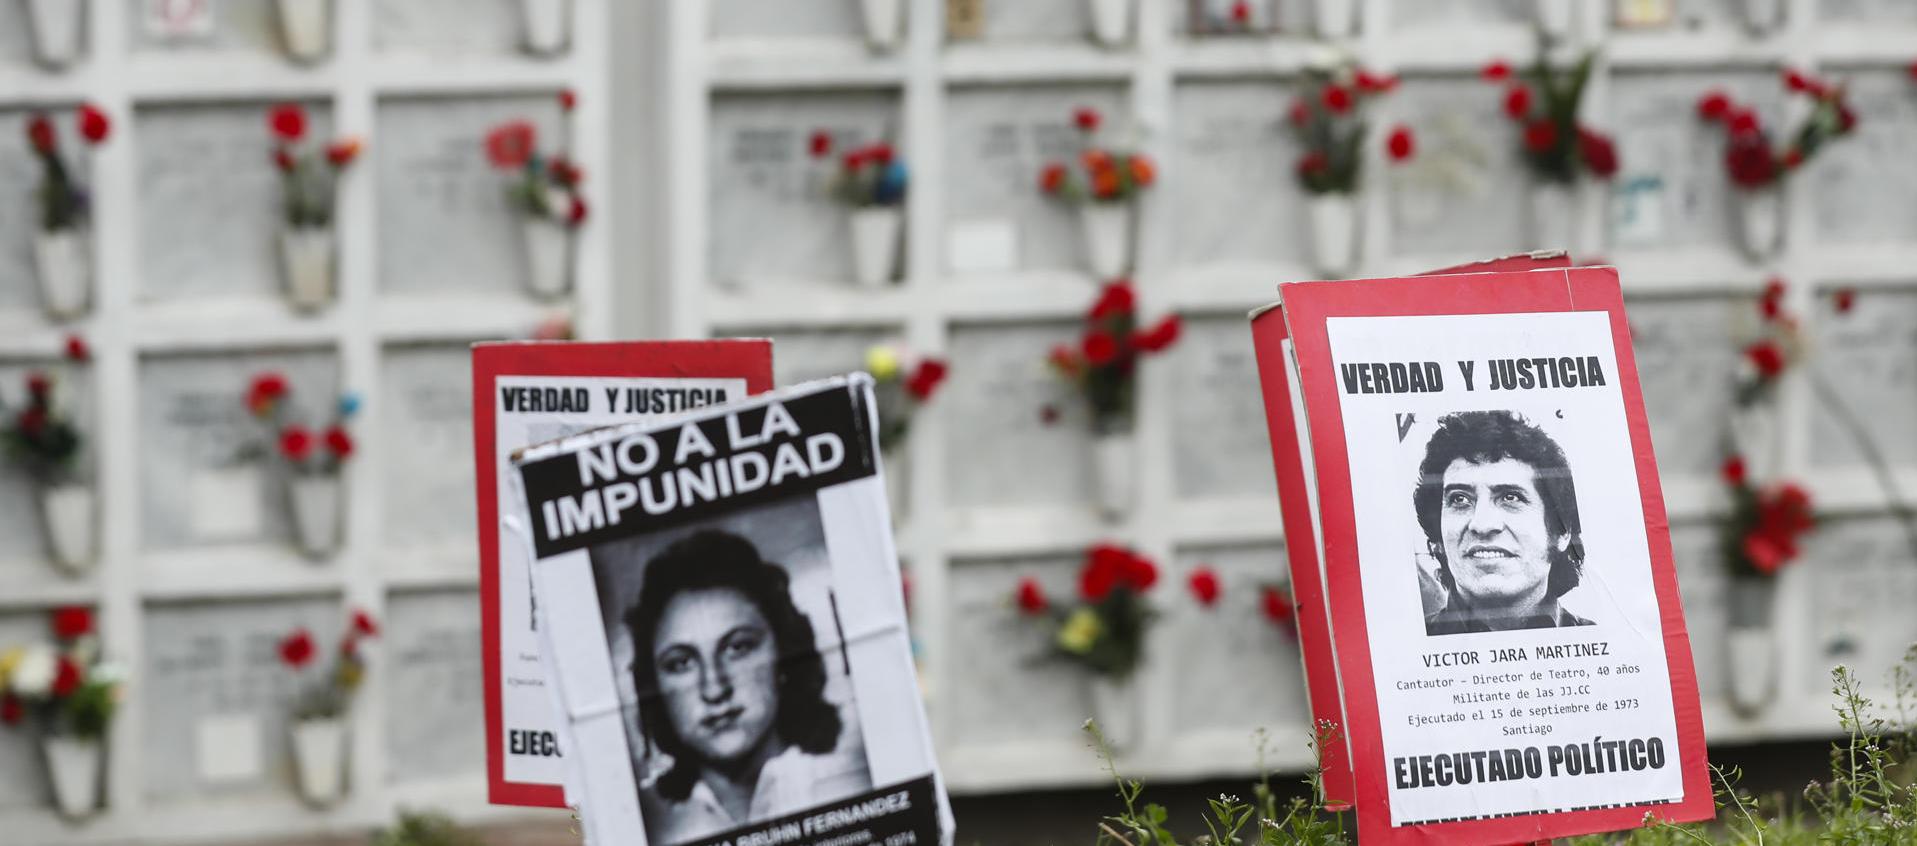 Fotografía de una imagen del cantautor chileno Víctor Jara ubicada en uno de los memoriales en honor a las víctimas durante la dictadura de Augusto Pinochet